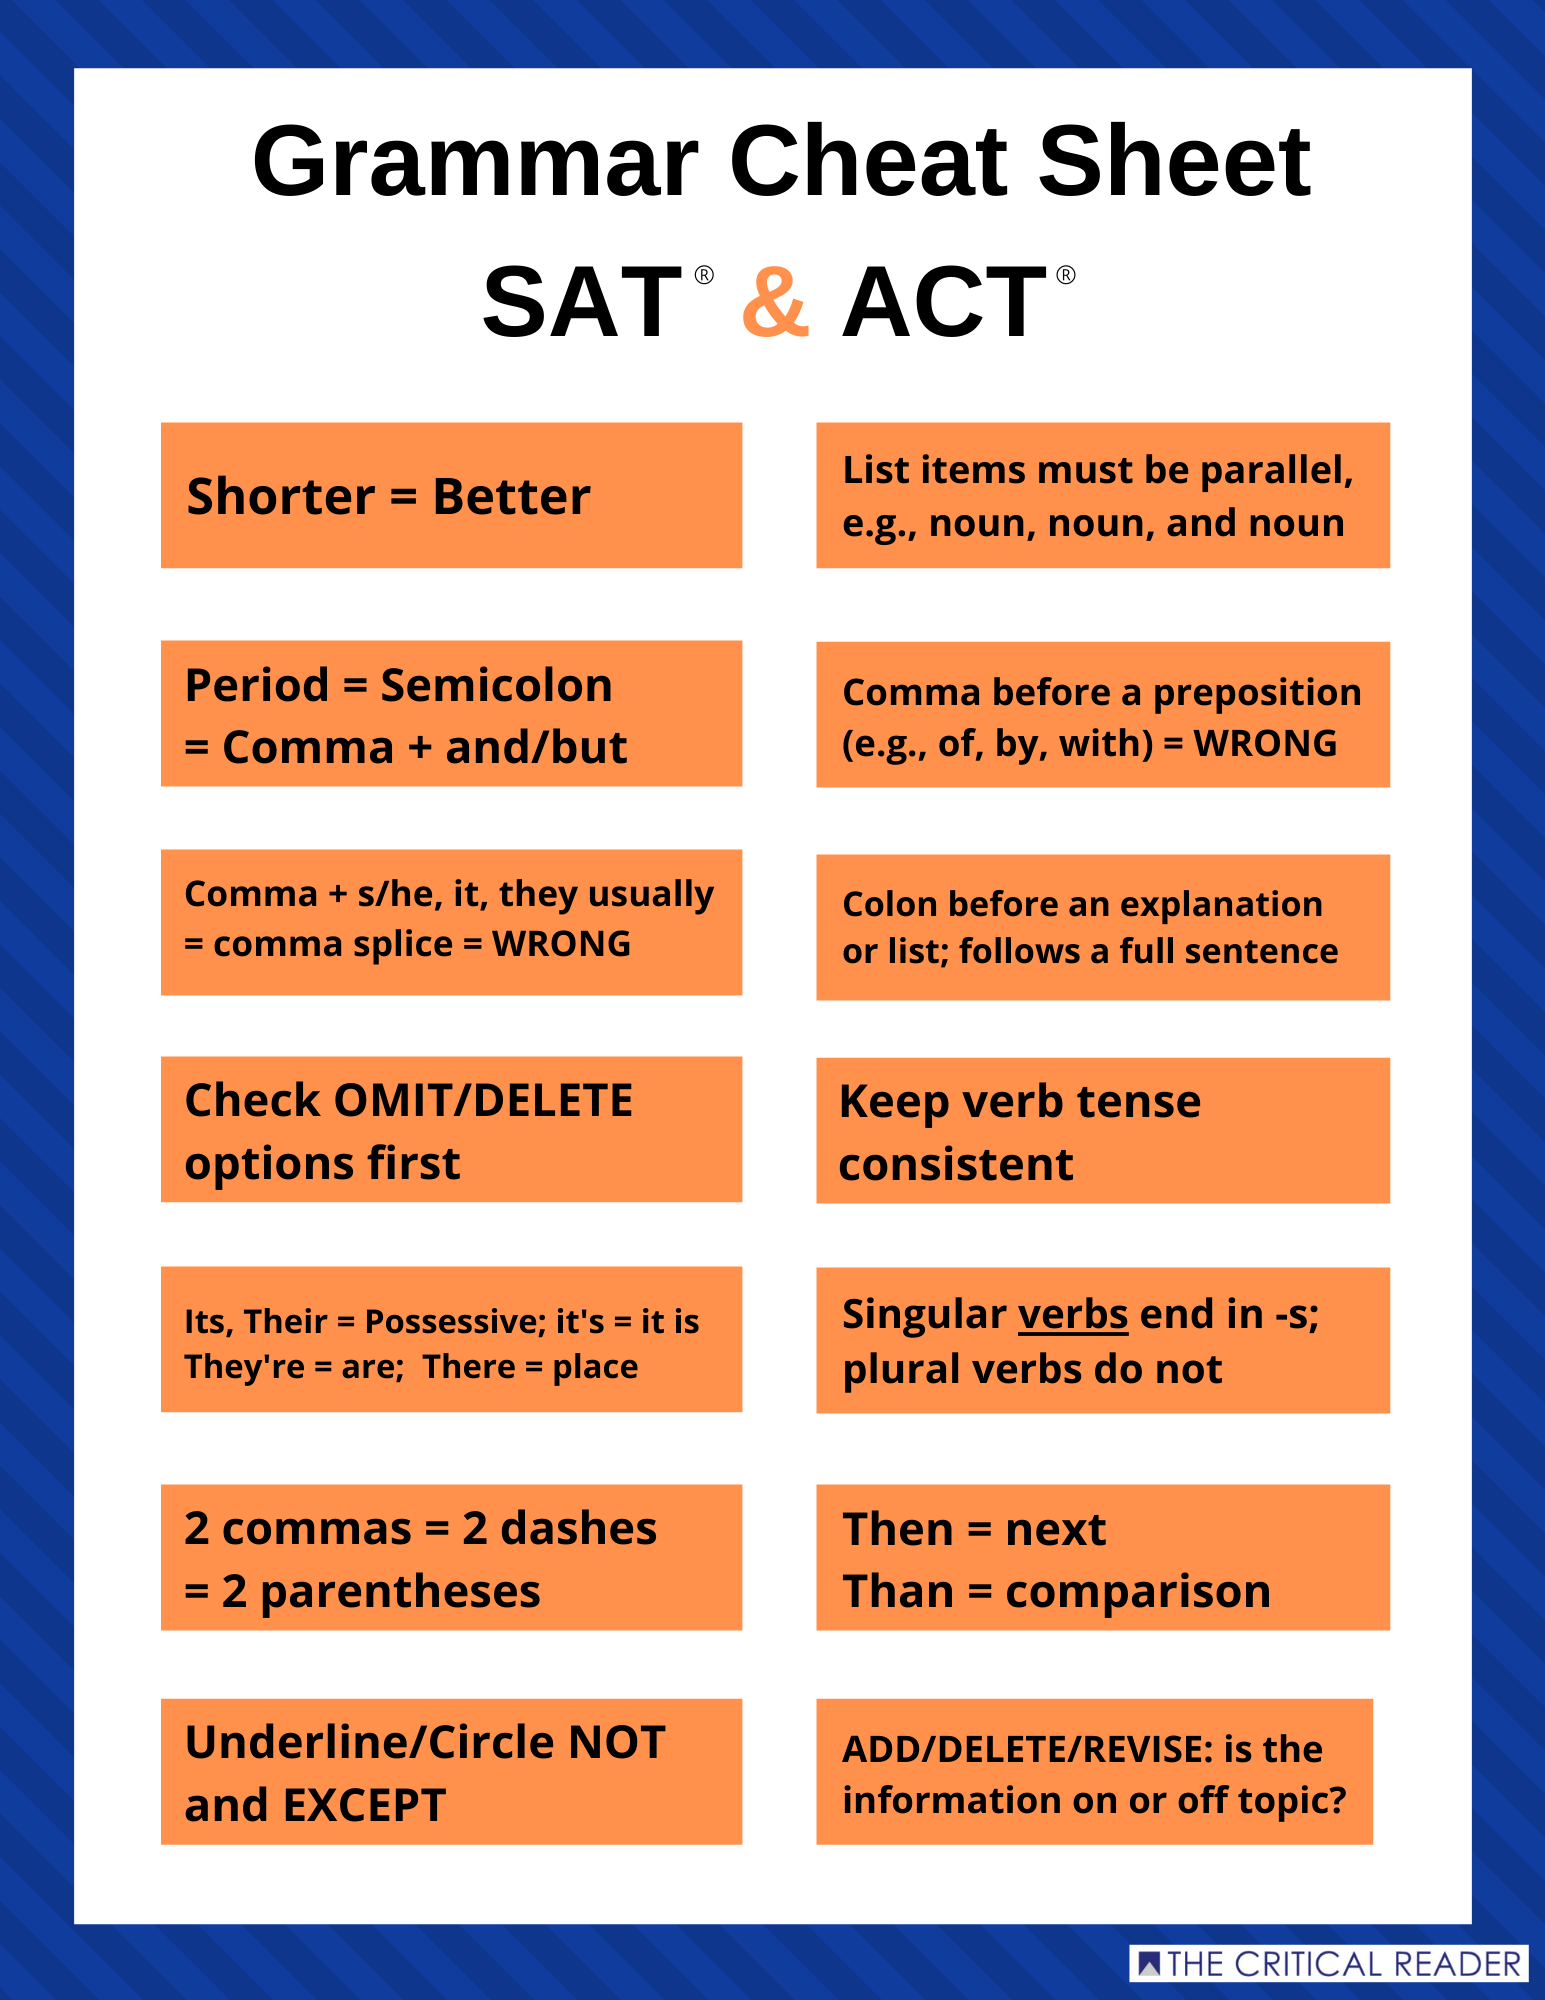 sat-act-grammar-cheat-sheet-free-the-critical-reader